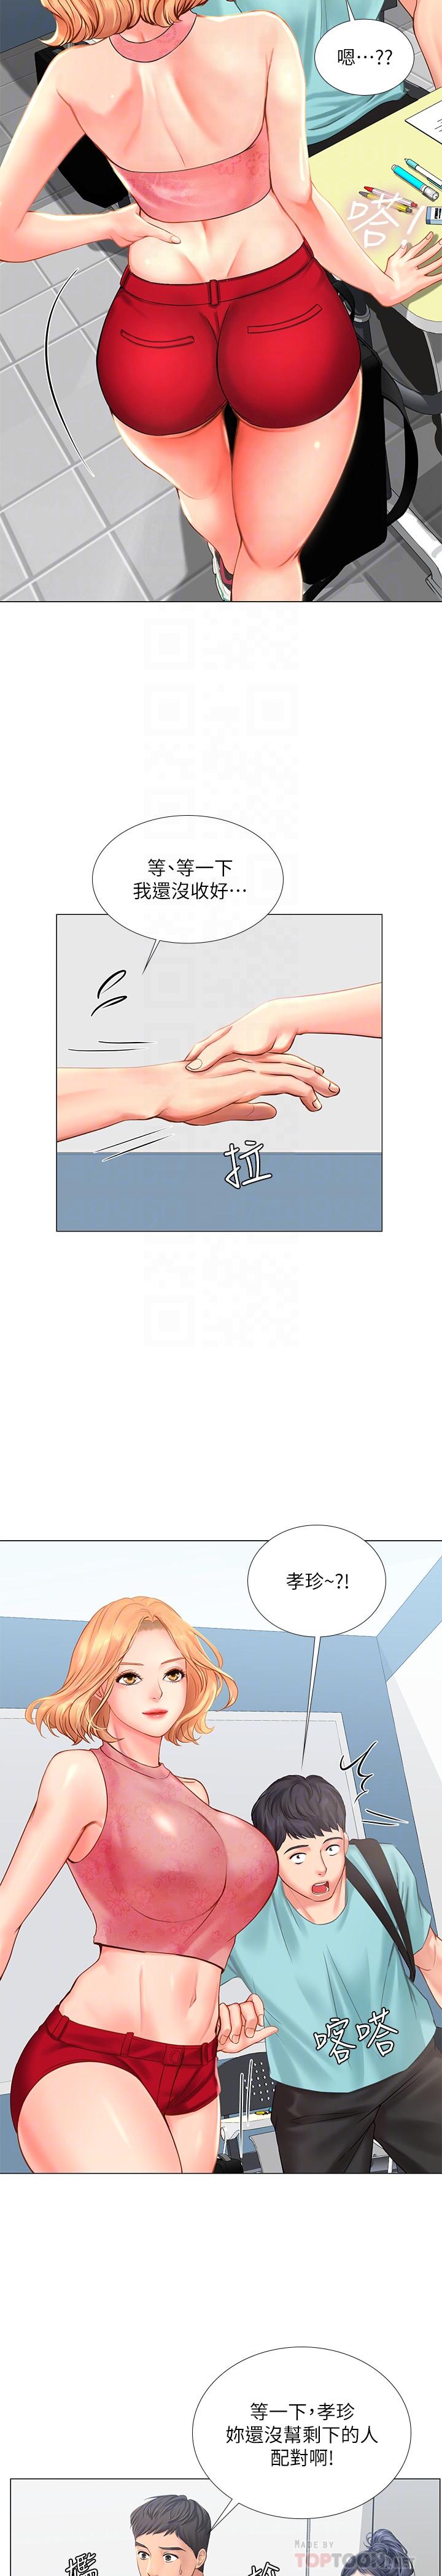 韩国污漫画 享樂補習街 第18话-来自学伴的安慰 10